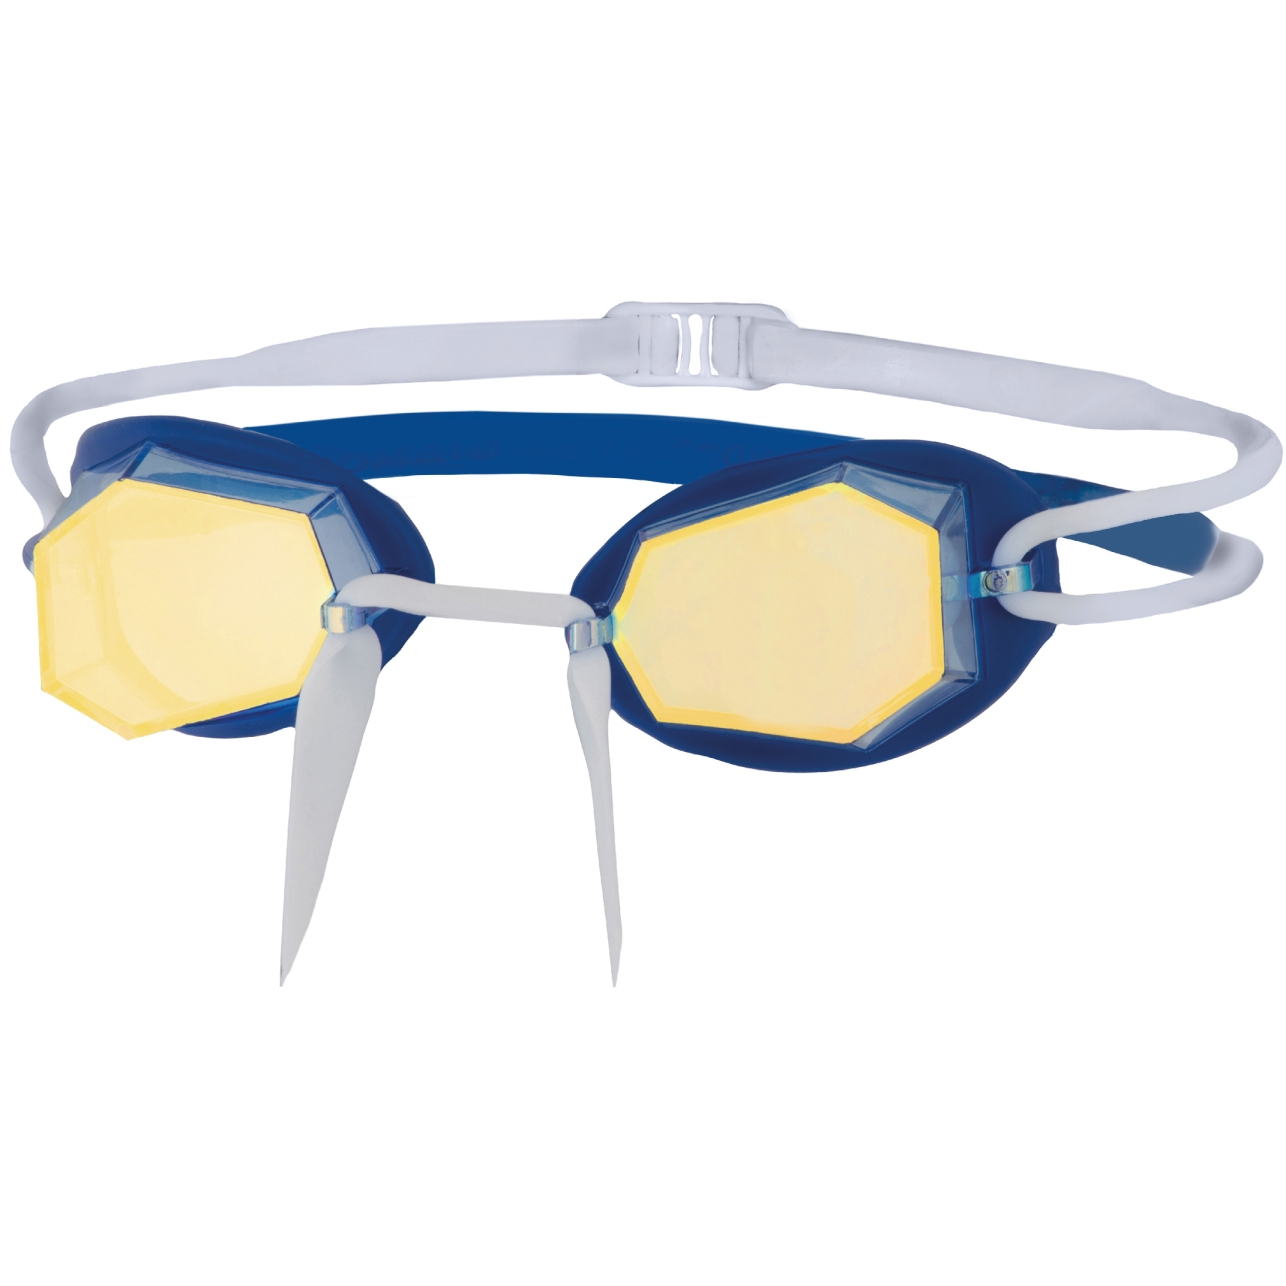 Image of Zoggs Diamond Mirror Swim Goggles - Blue/White/Mirrored Gold